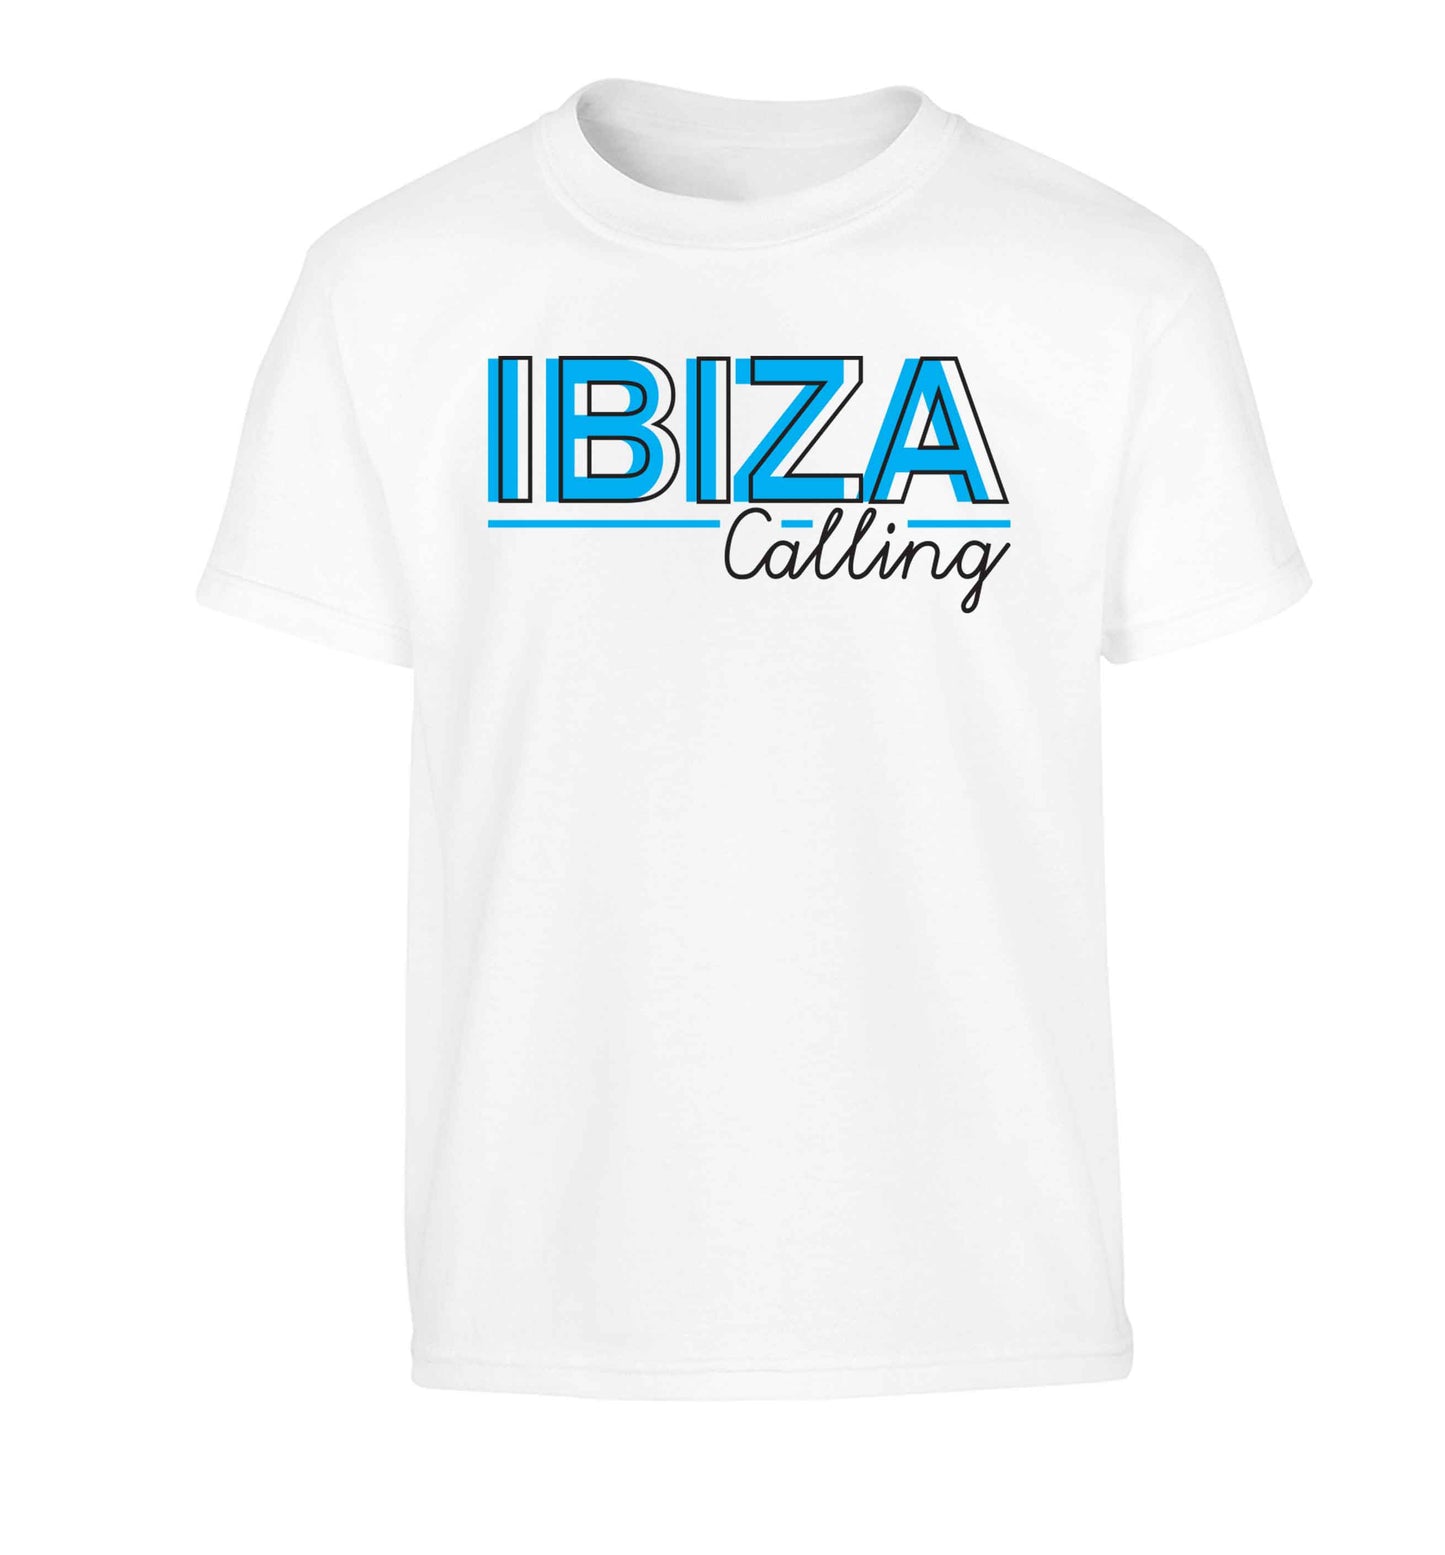 Ibiza calling Children's white Tshirt 12-13 Years